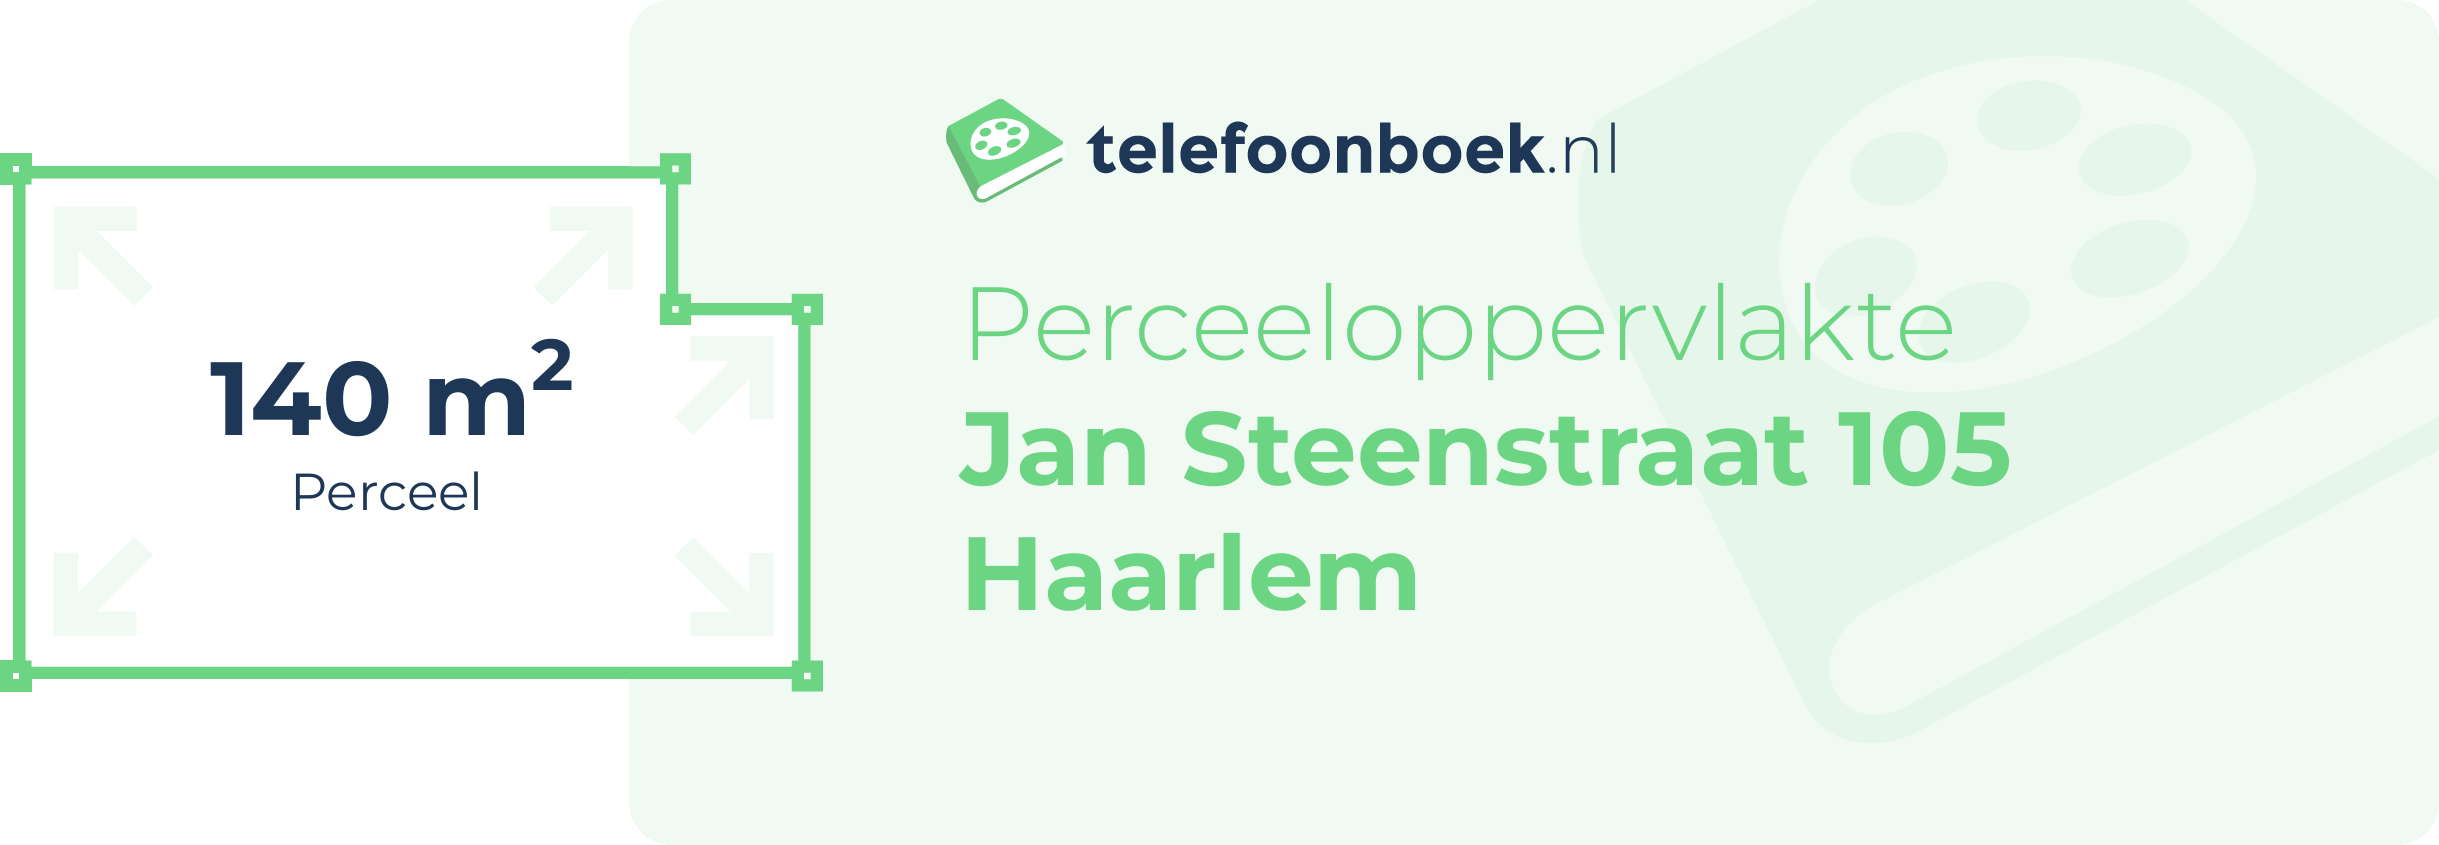 Perceeloppervlakte Jan Steenstraat 105 Haarlem